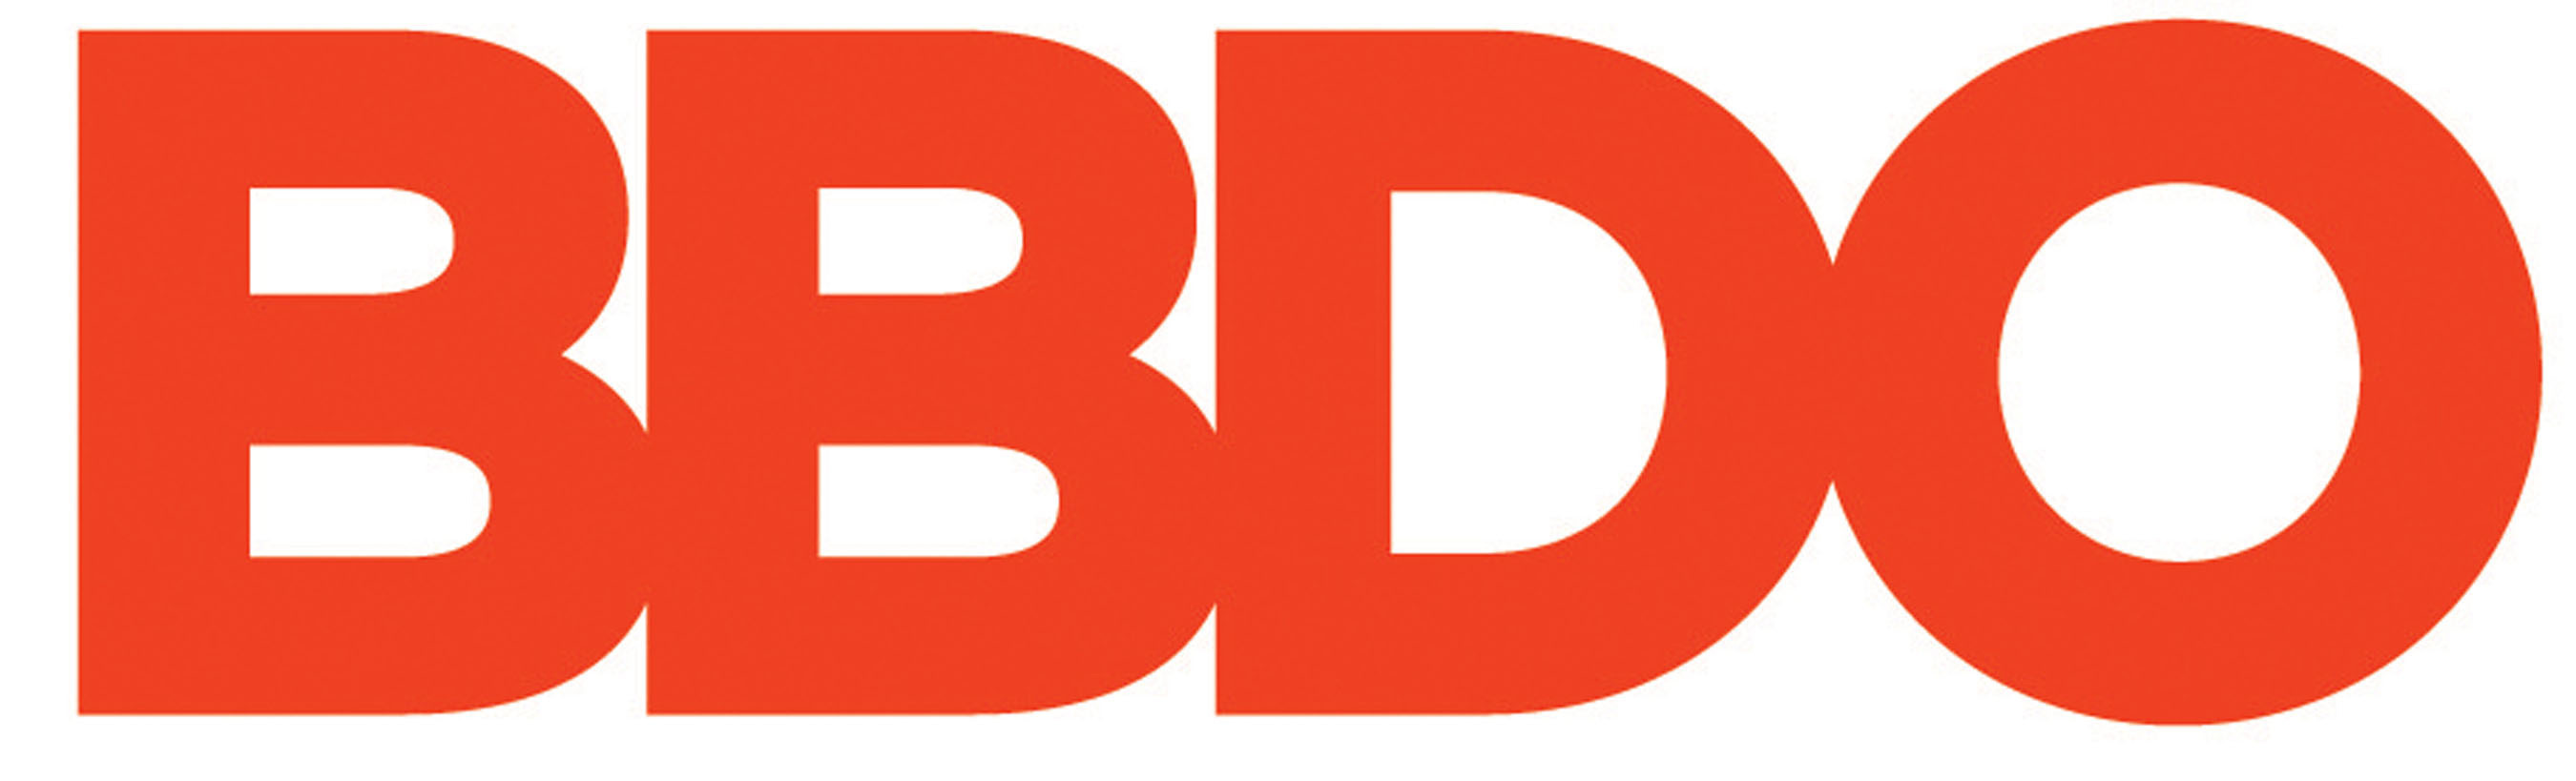 BBDO Worldwide logo. (PRNewsFoto/BBDO Worldwide) (PRNewsFoto/)